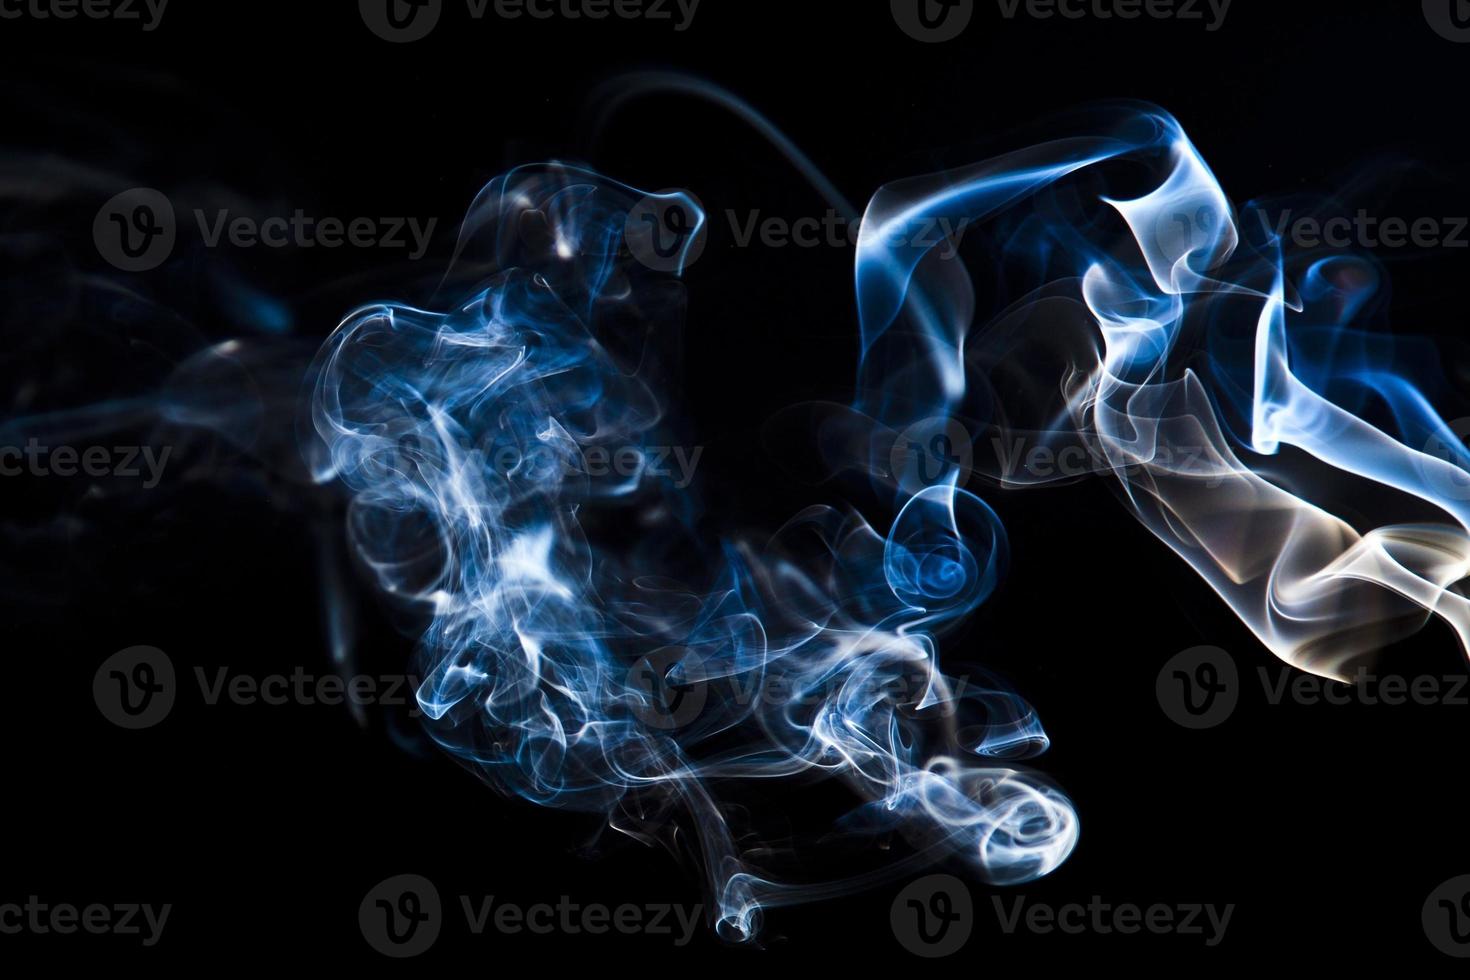 fumaça colorida em fundo preto foto